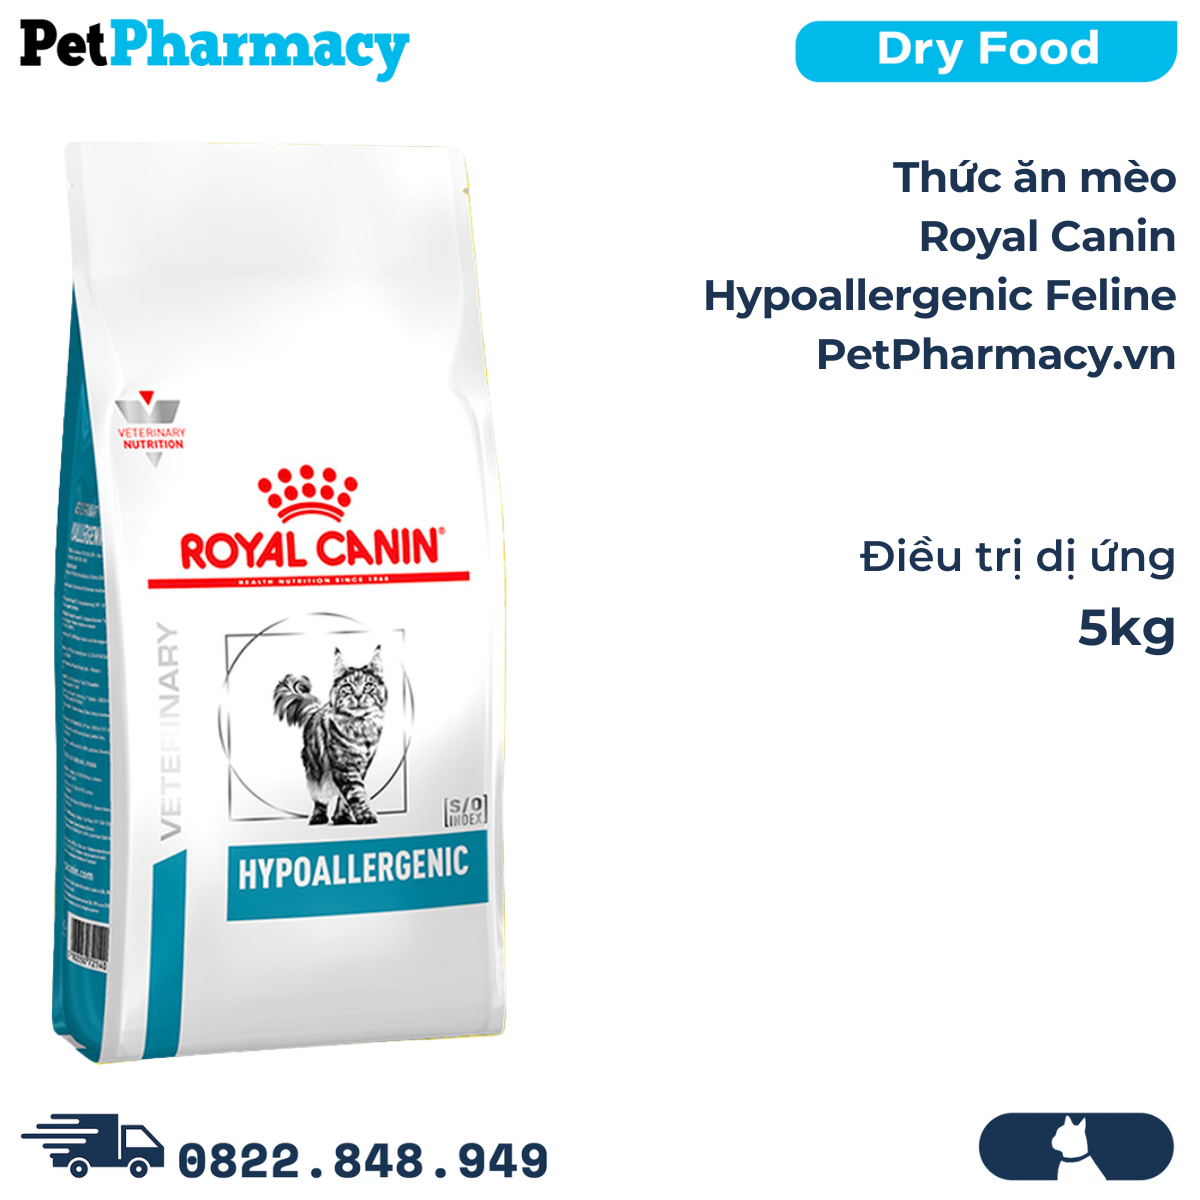  Thức ăn mèo Royal Canin Hypoallergenic Feline 5kg - Điều trị dị ứng 